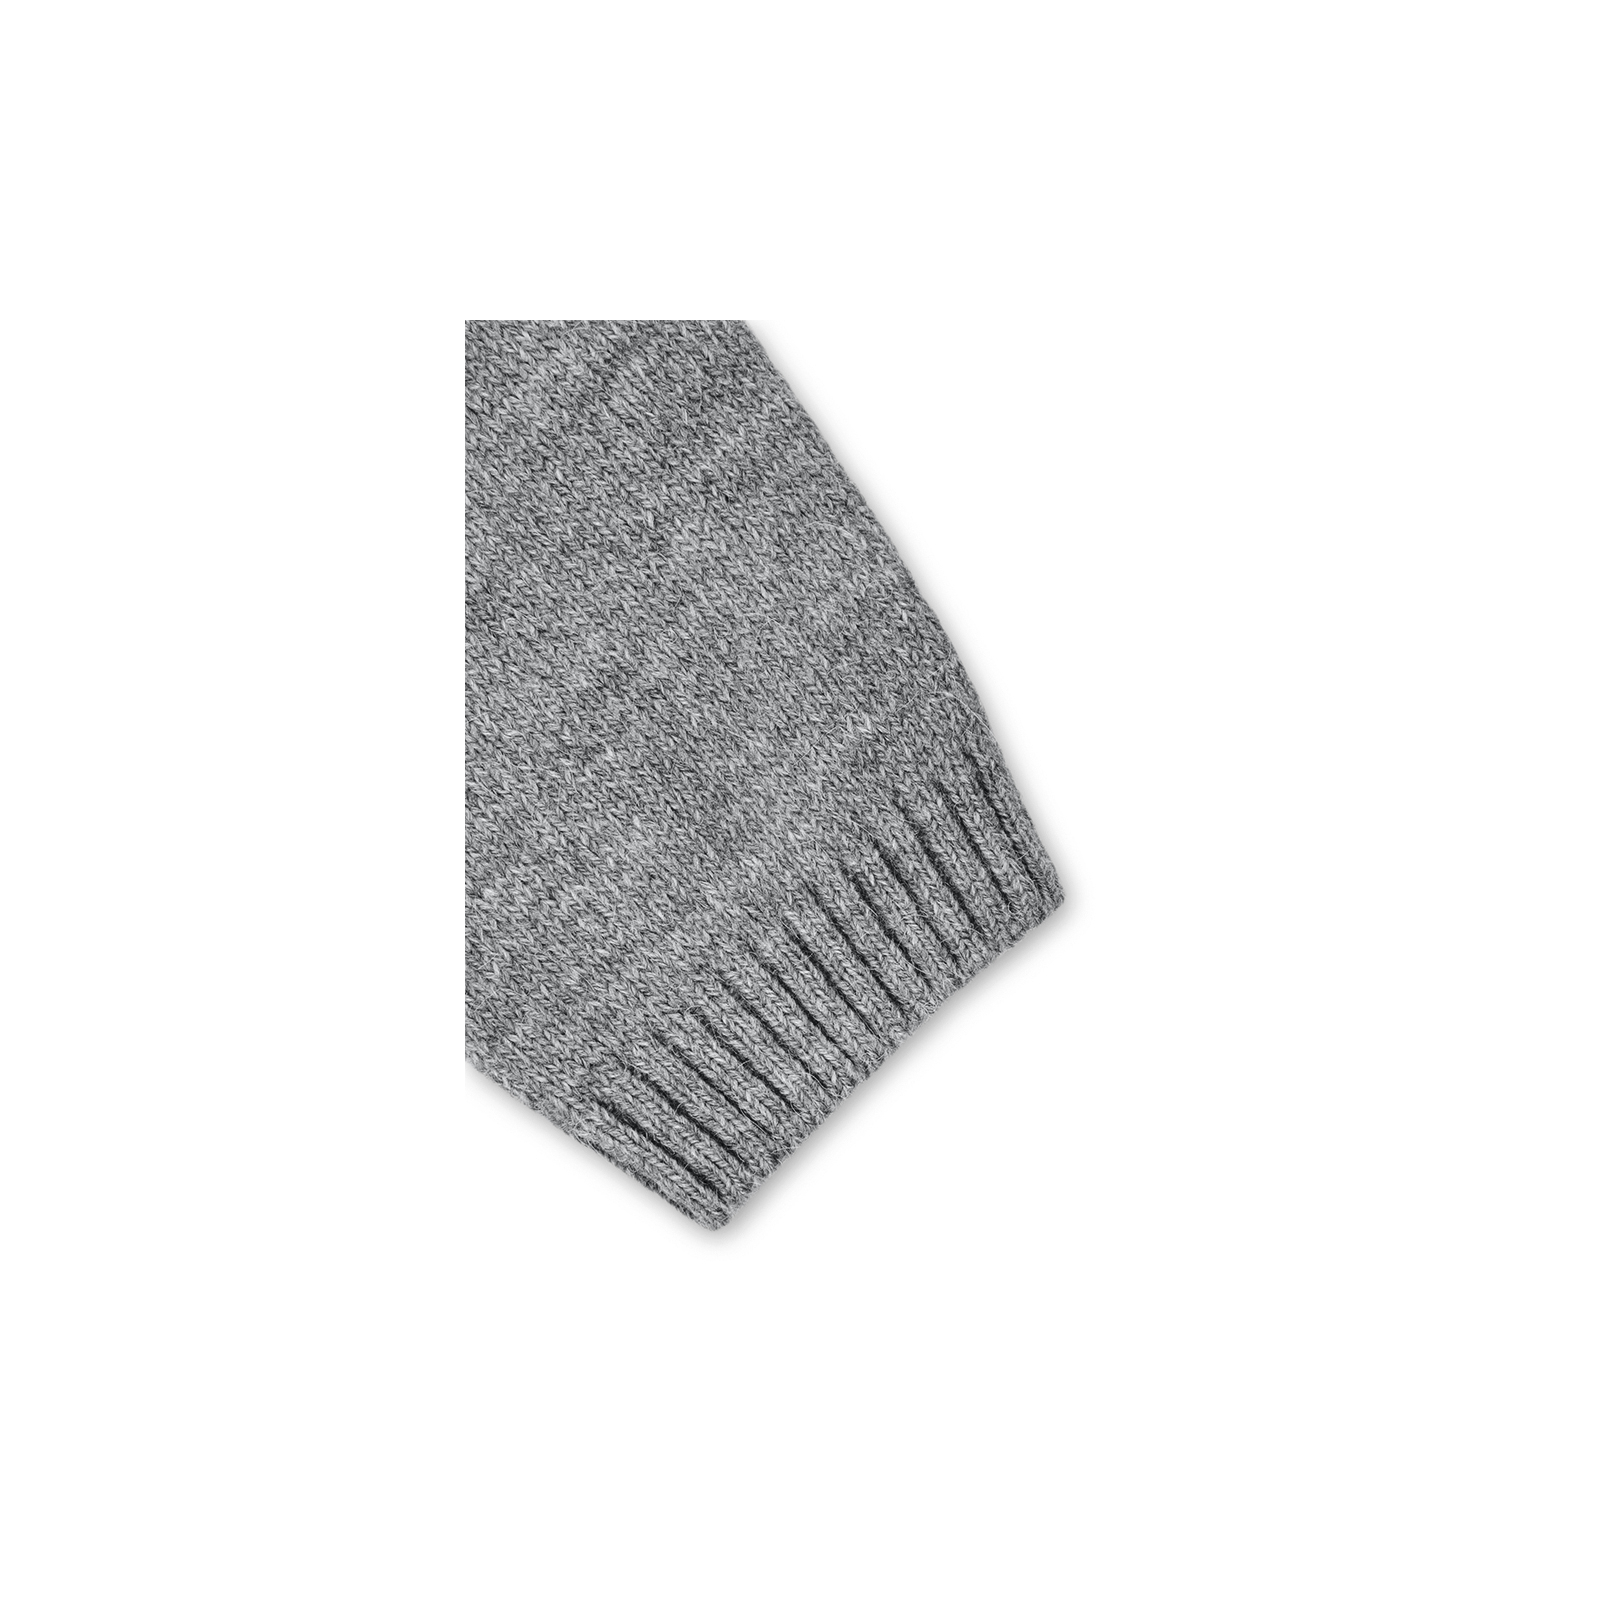 Кофта Breeze джемпер серый меланж со звездочками (T-104-116G-gray) изображение 5